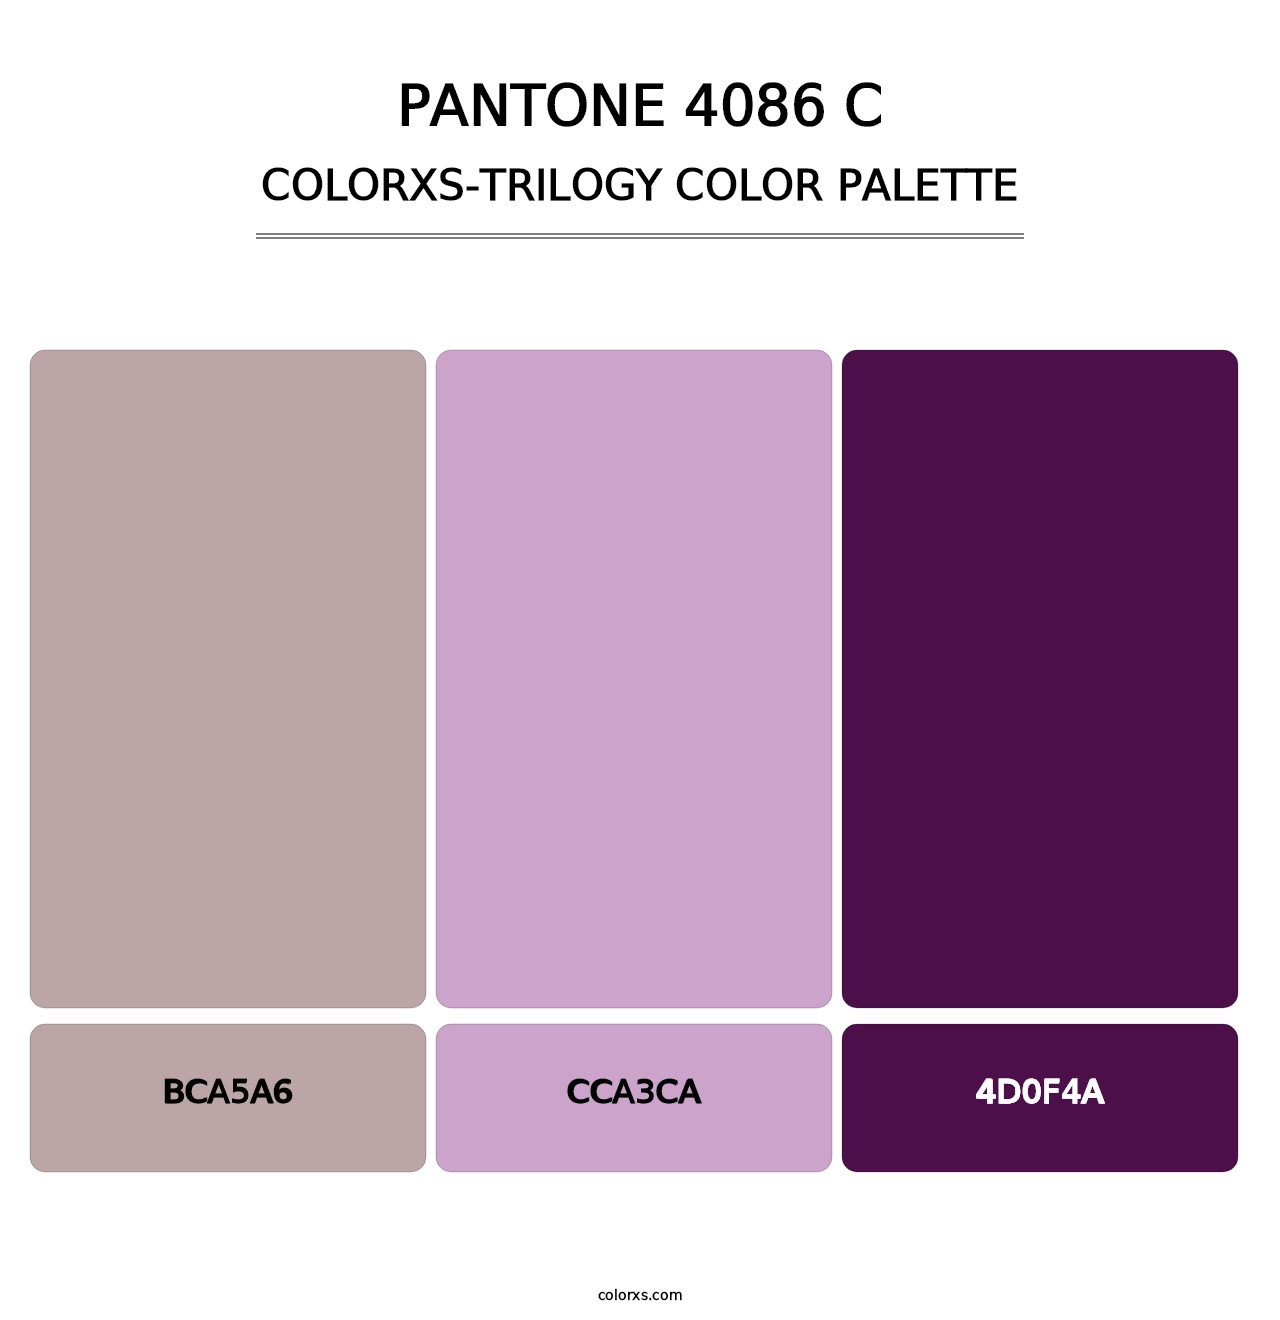 PANTONE 4086 C - Colorxs Trilogy Palette